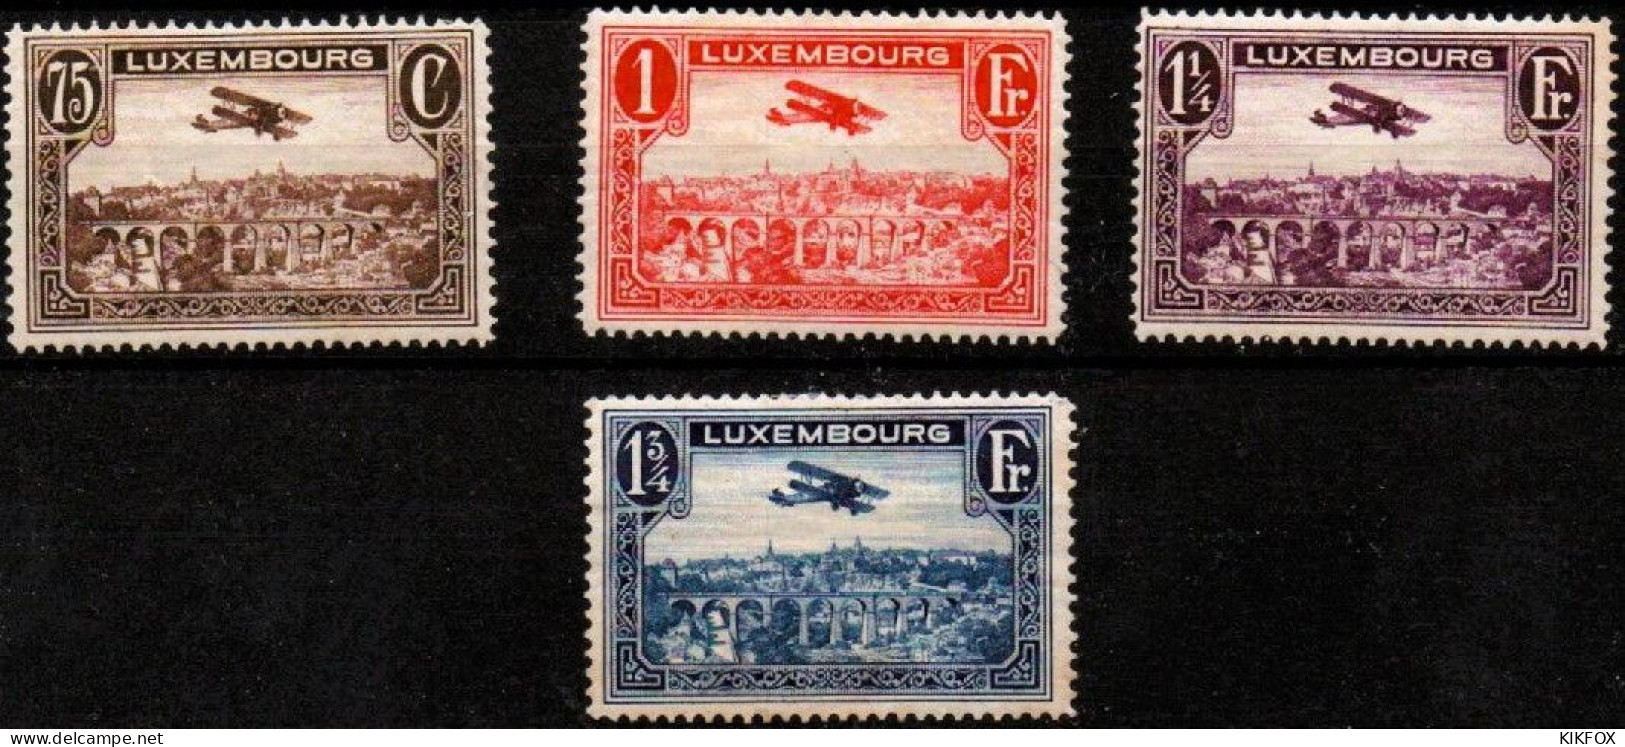 LUXEMBOURG, LUXEMBURG 1931 Mi 234 - 237 , PA 1 - 4  Flugpost , BREGUET-DOPPELDECKER, UNGEBRAUCHT, CHARNIERES * - Unused Stamps